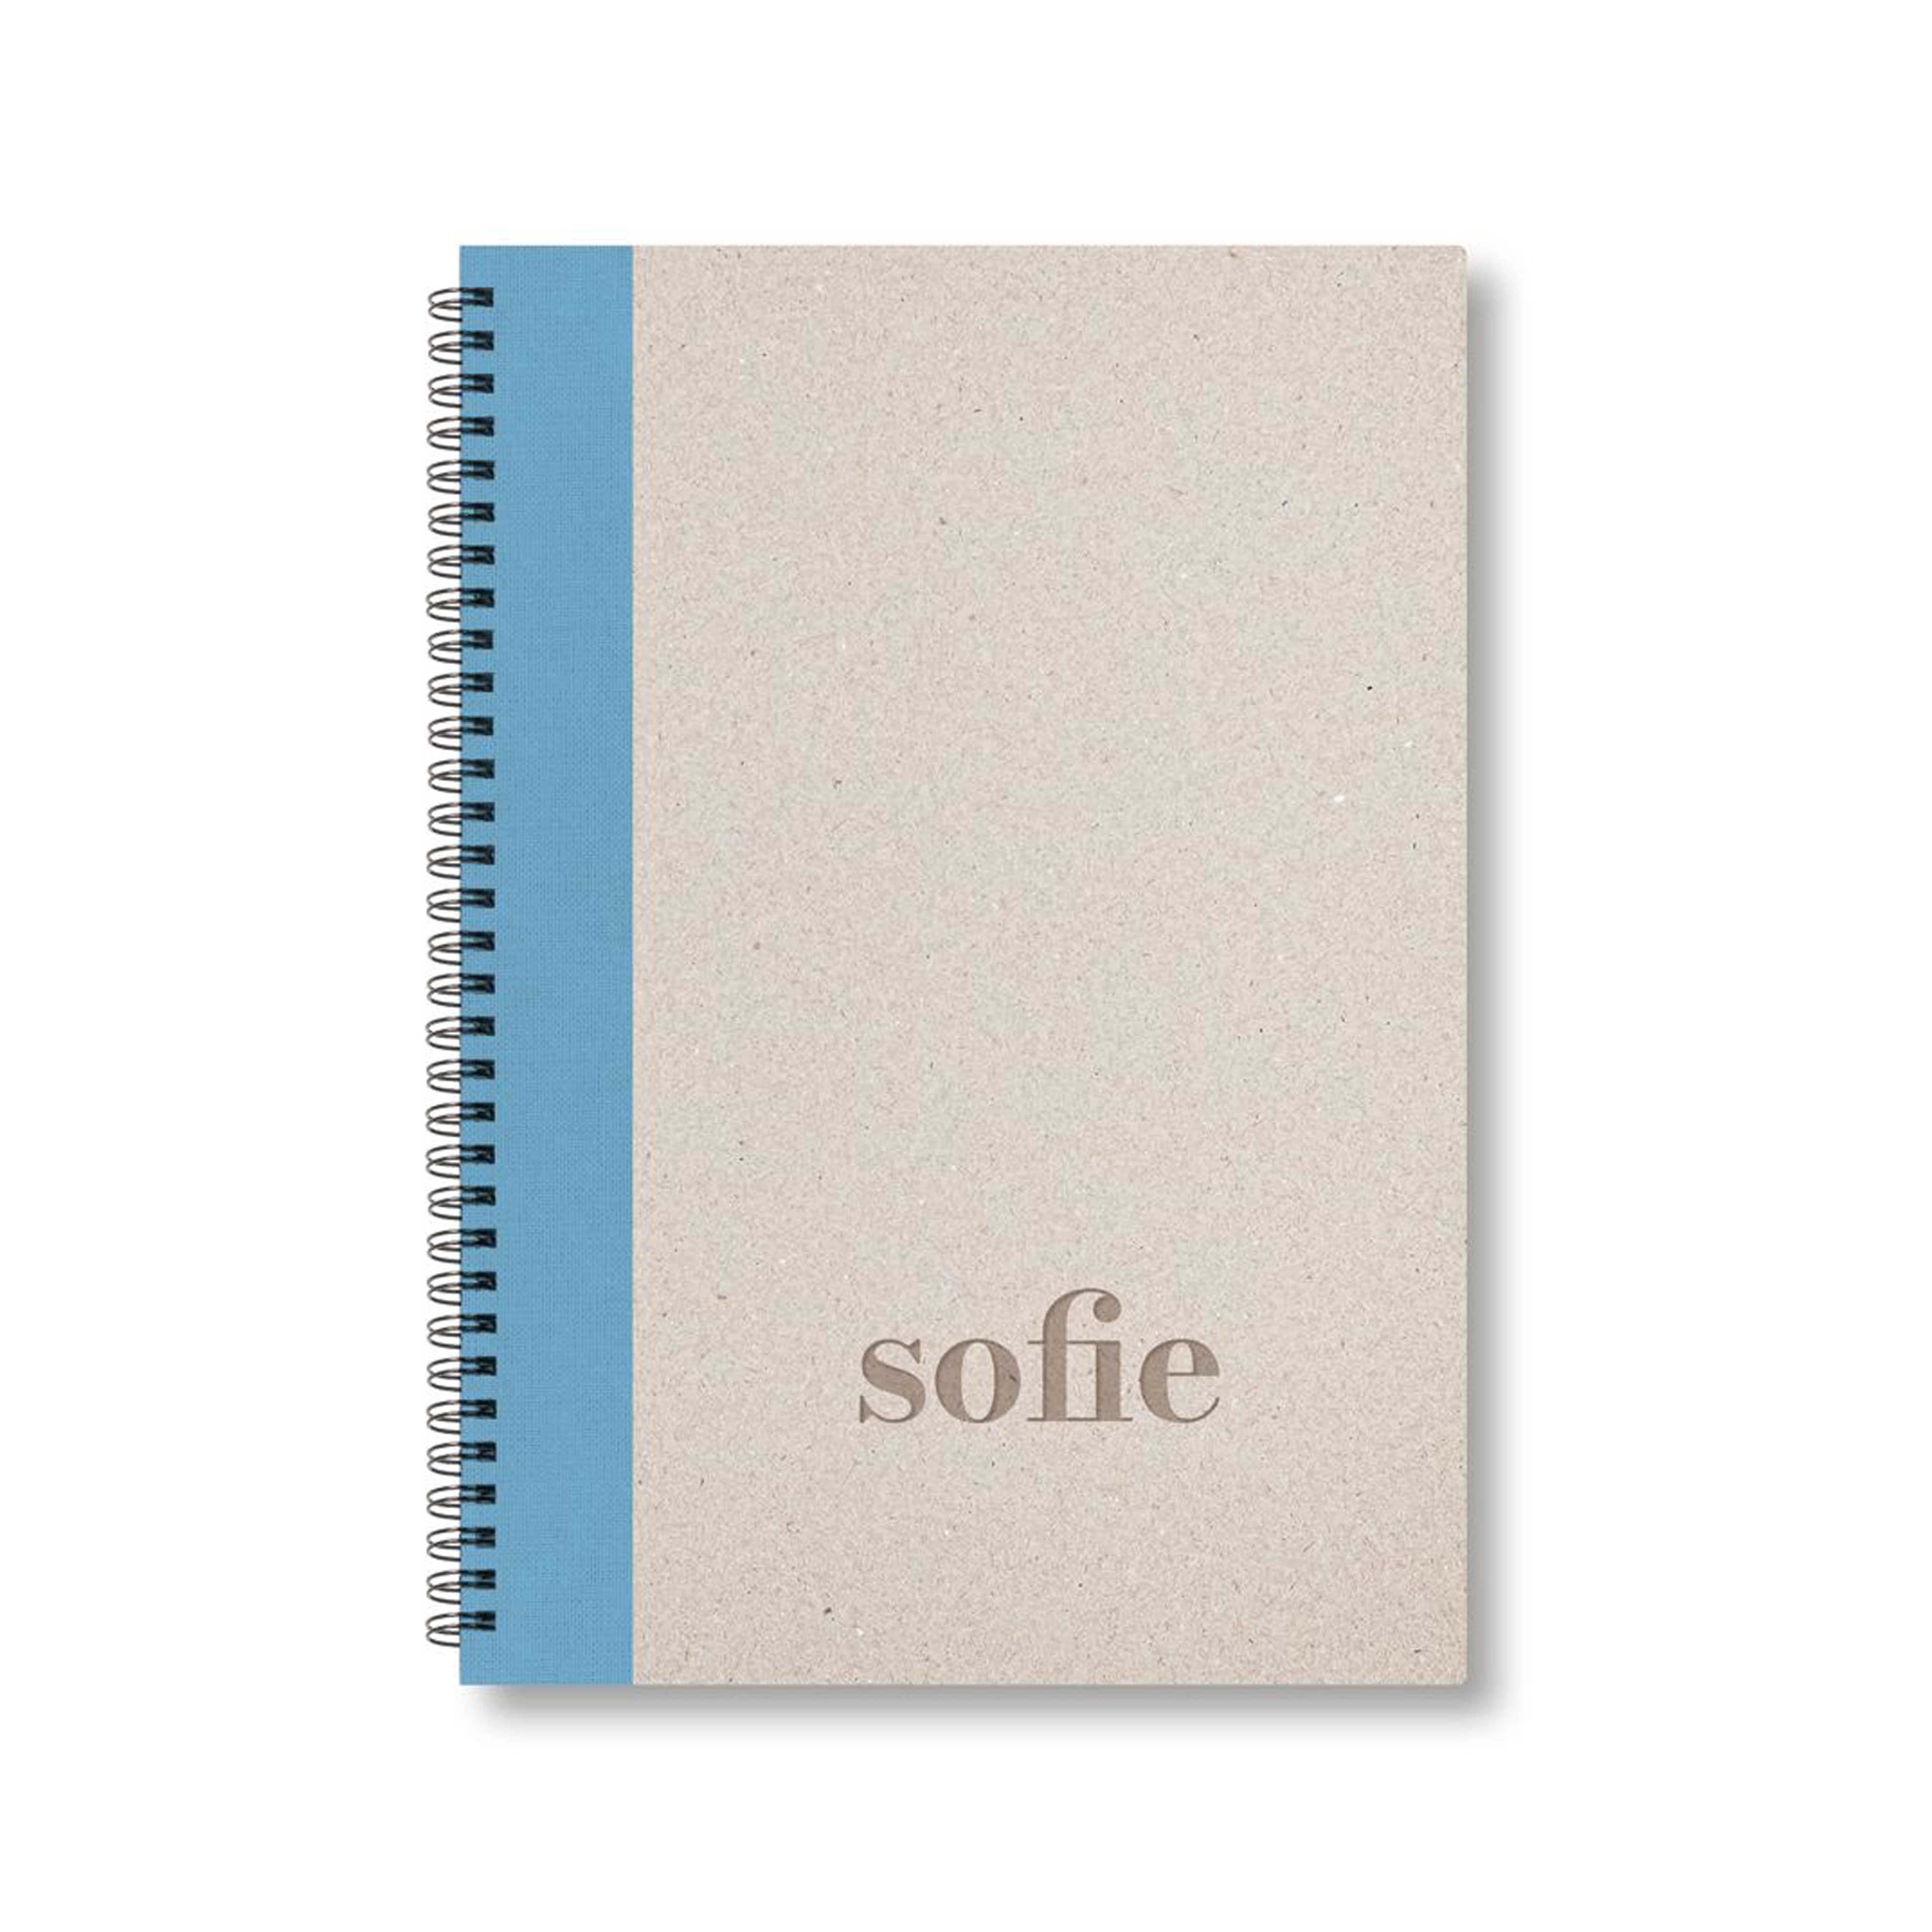 BOBO Zápisník, B5, čistý, světle modrý, konfiguruj si obálku